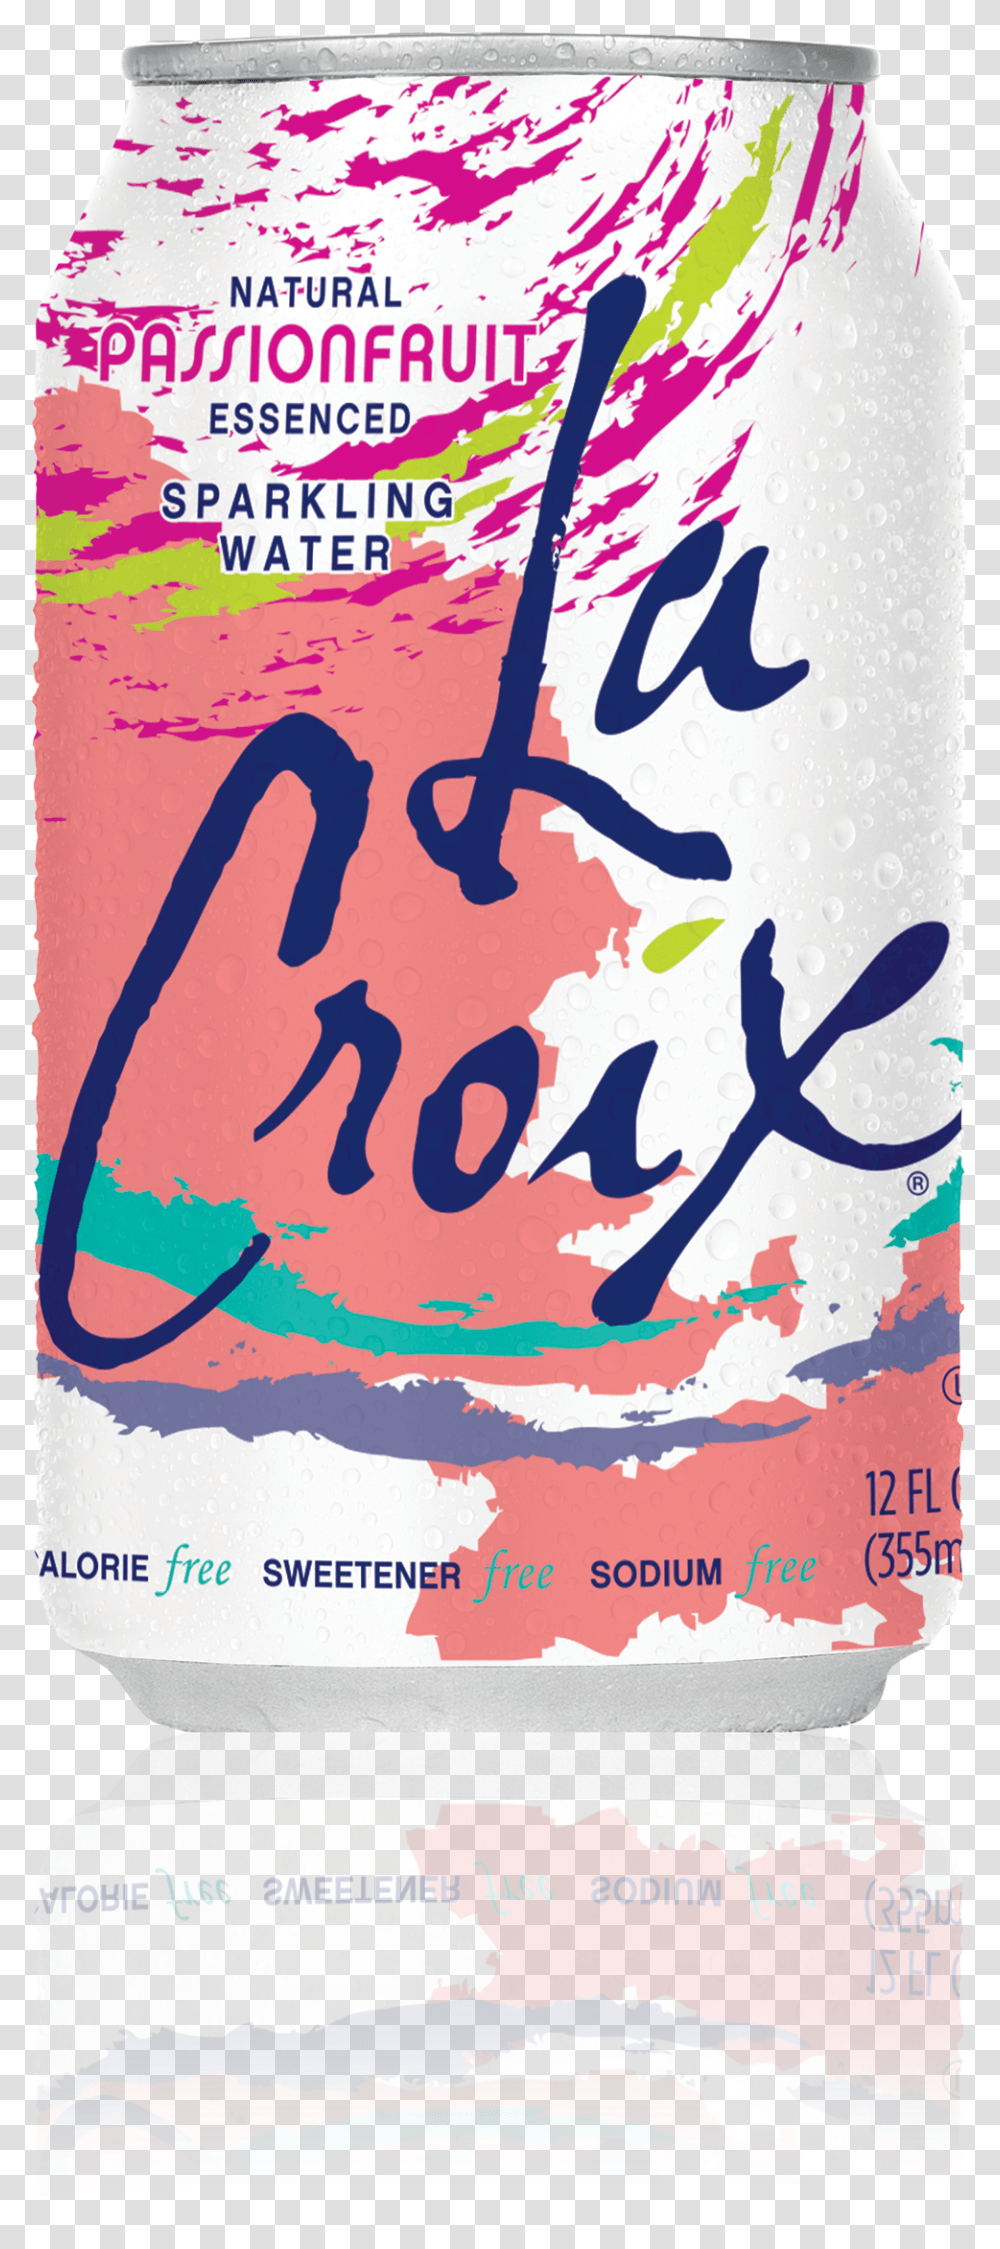 Upc Product Image For Lacroix Sparkling La Cox Drink, Label, Poster, Advertisement Transparent Png